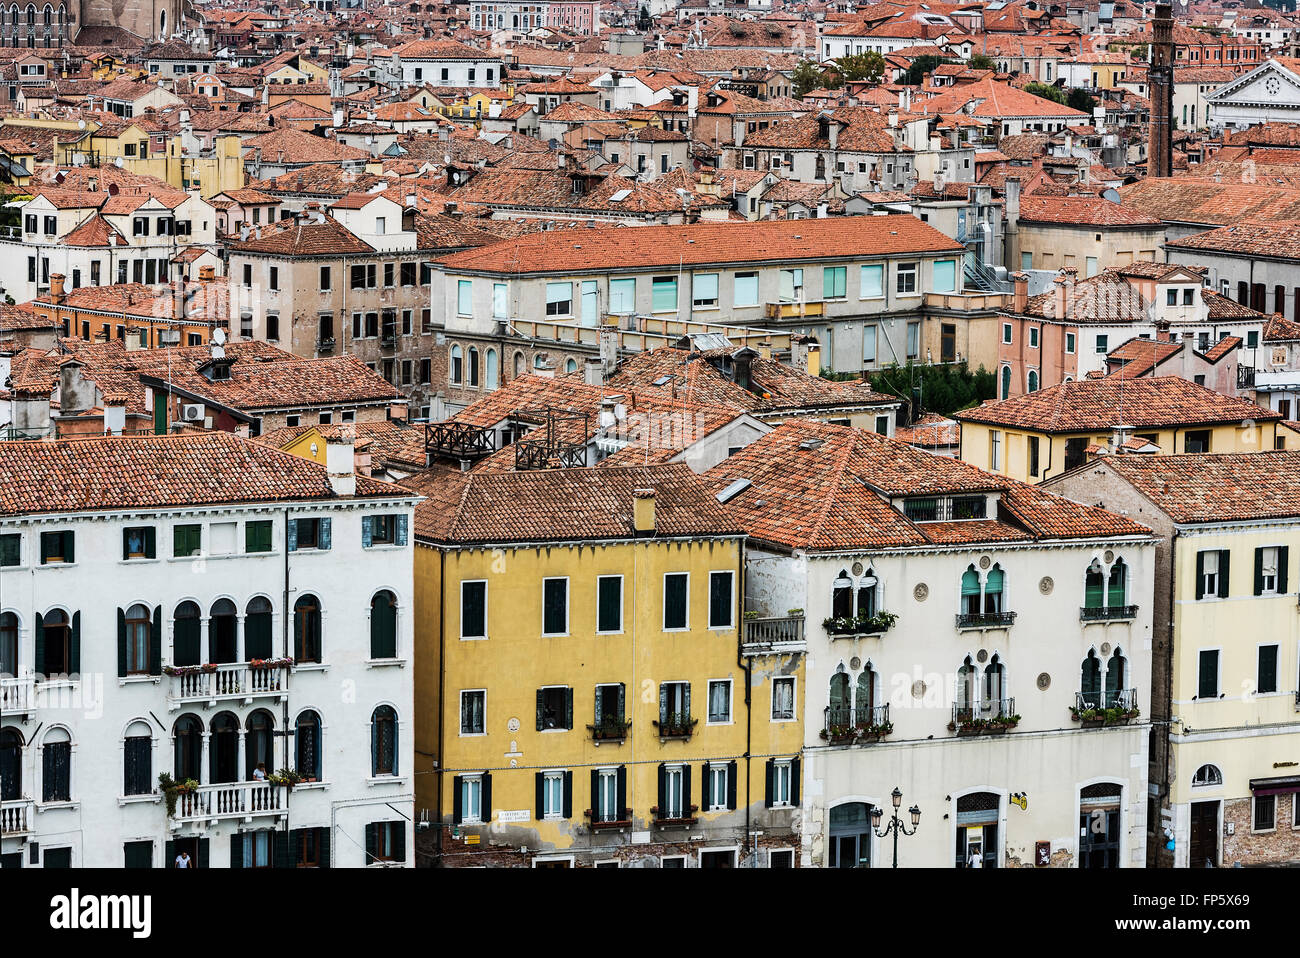 Affascinante architettura tradizionale e tetti in terracotta nella città di Venezia, Italia Foto Stock